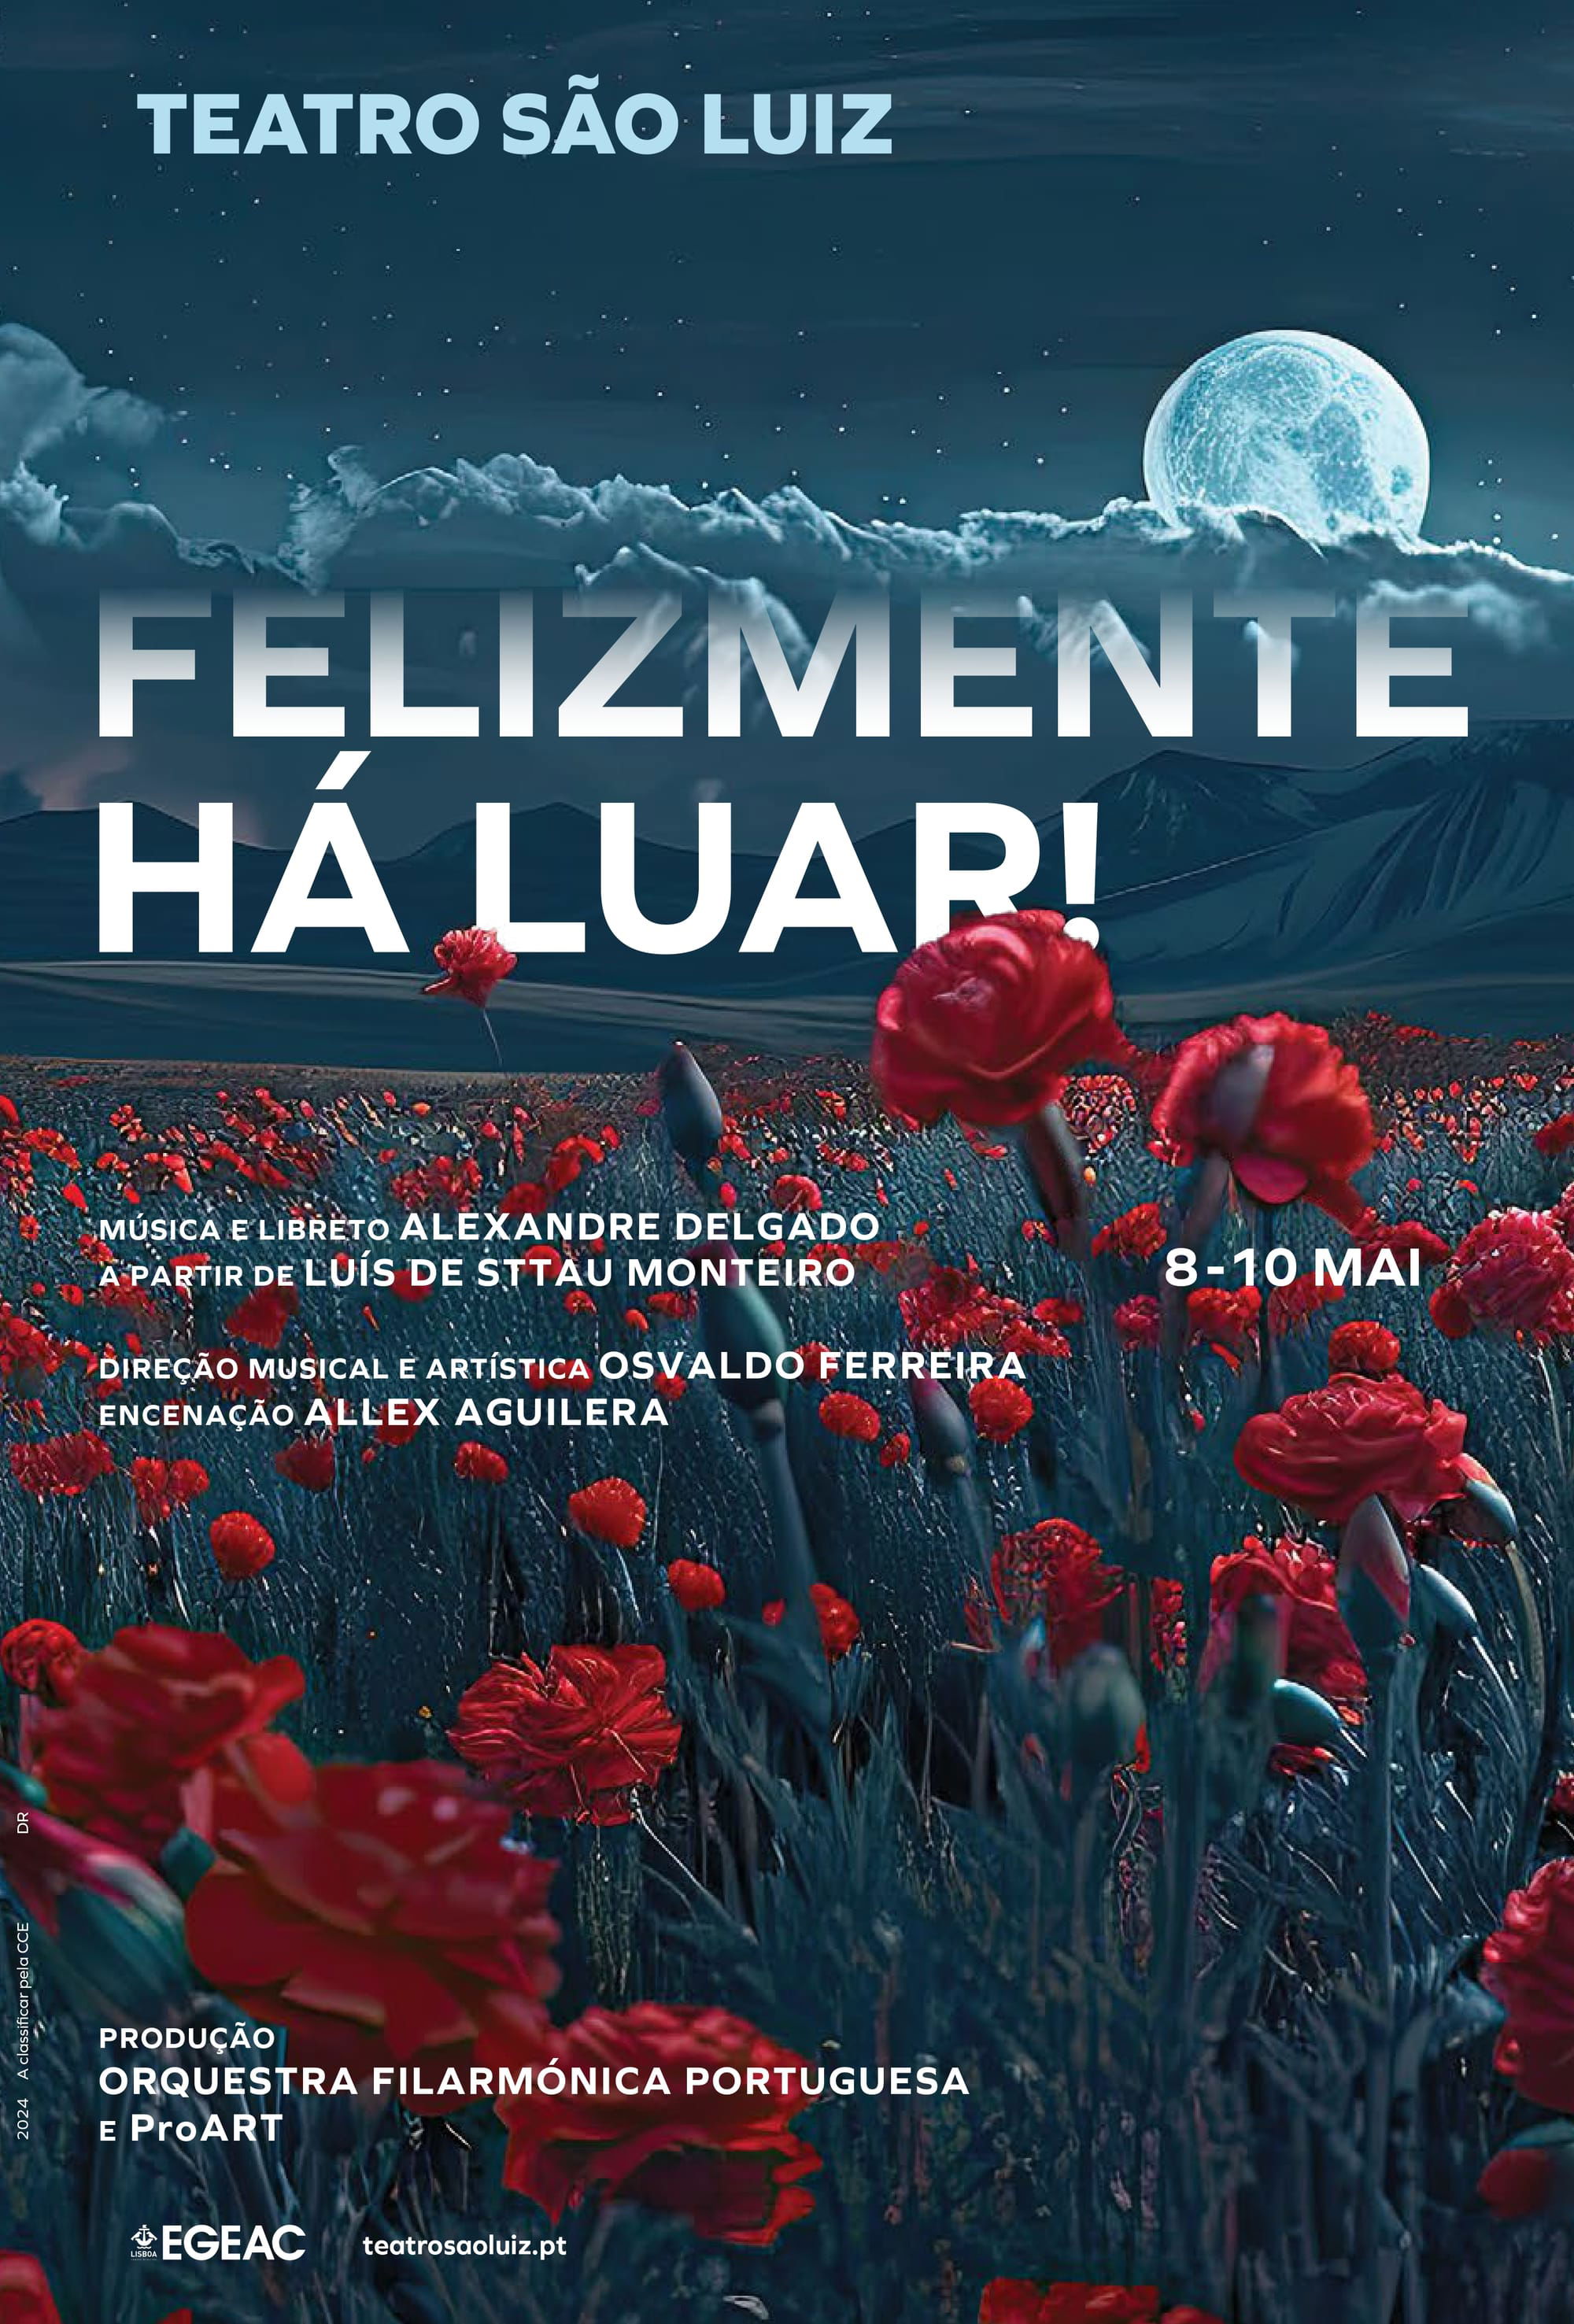 A Liberdade Cantada – A ópera "Felizmente Há Luar!" estreia dia 8 de maio no Teatro São Luiz, em Lisboa